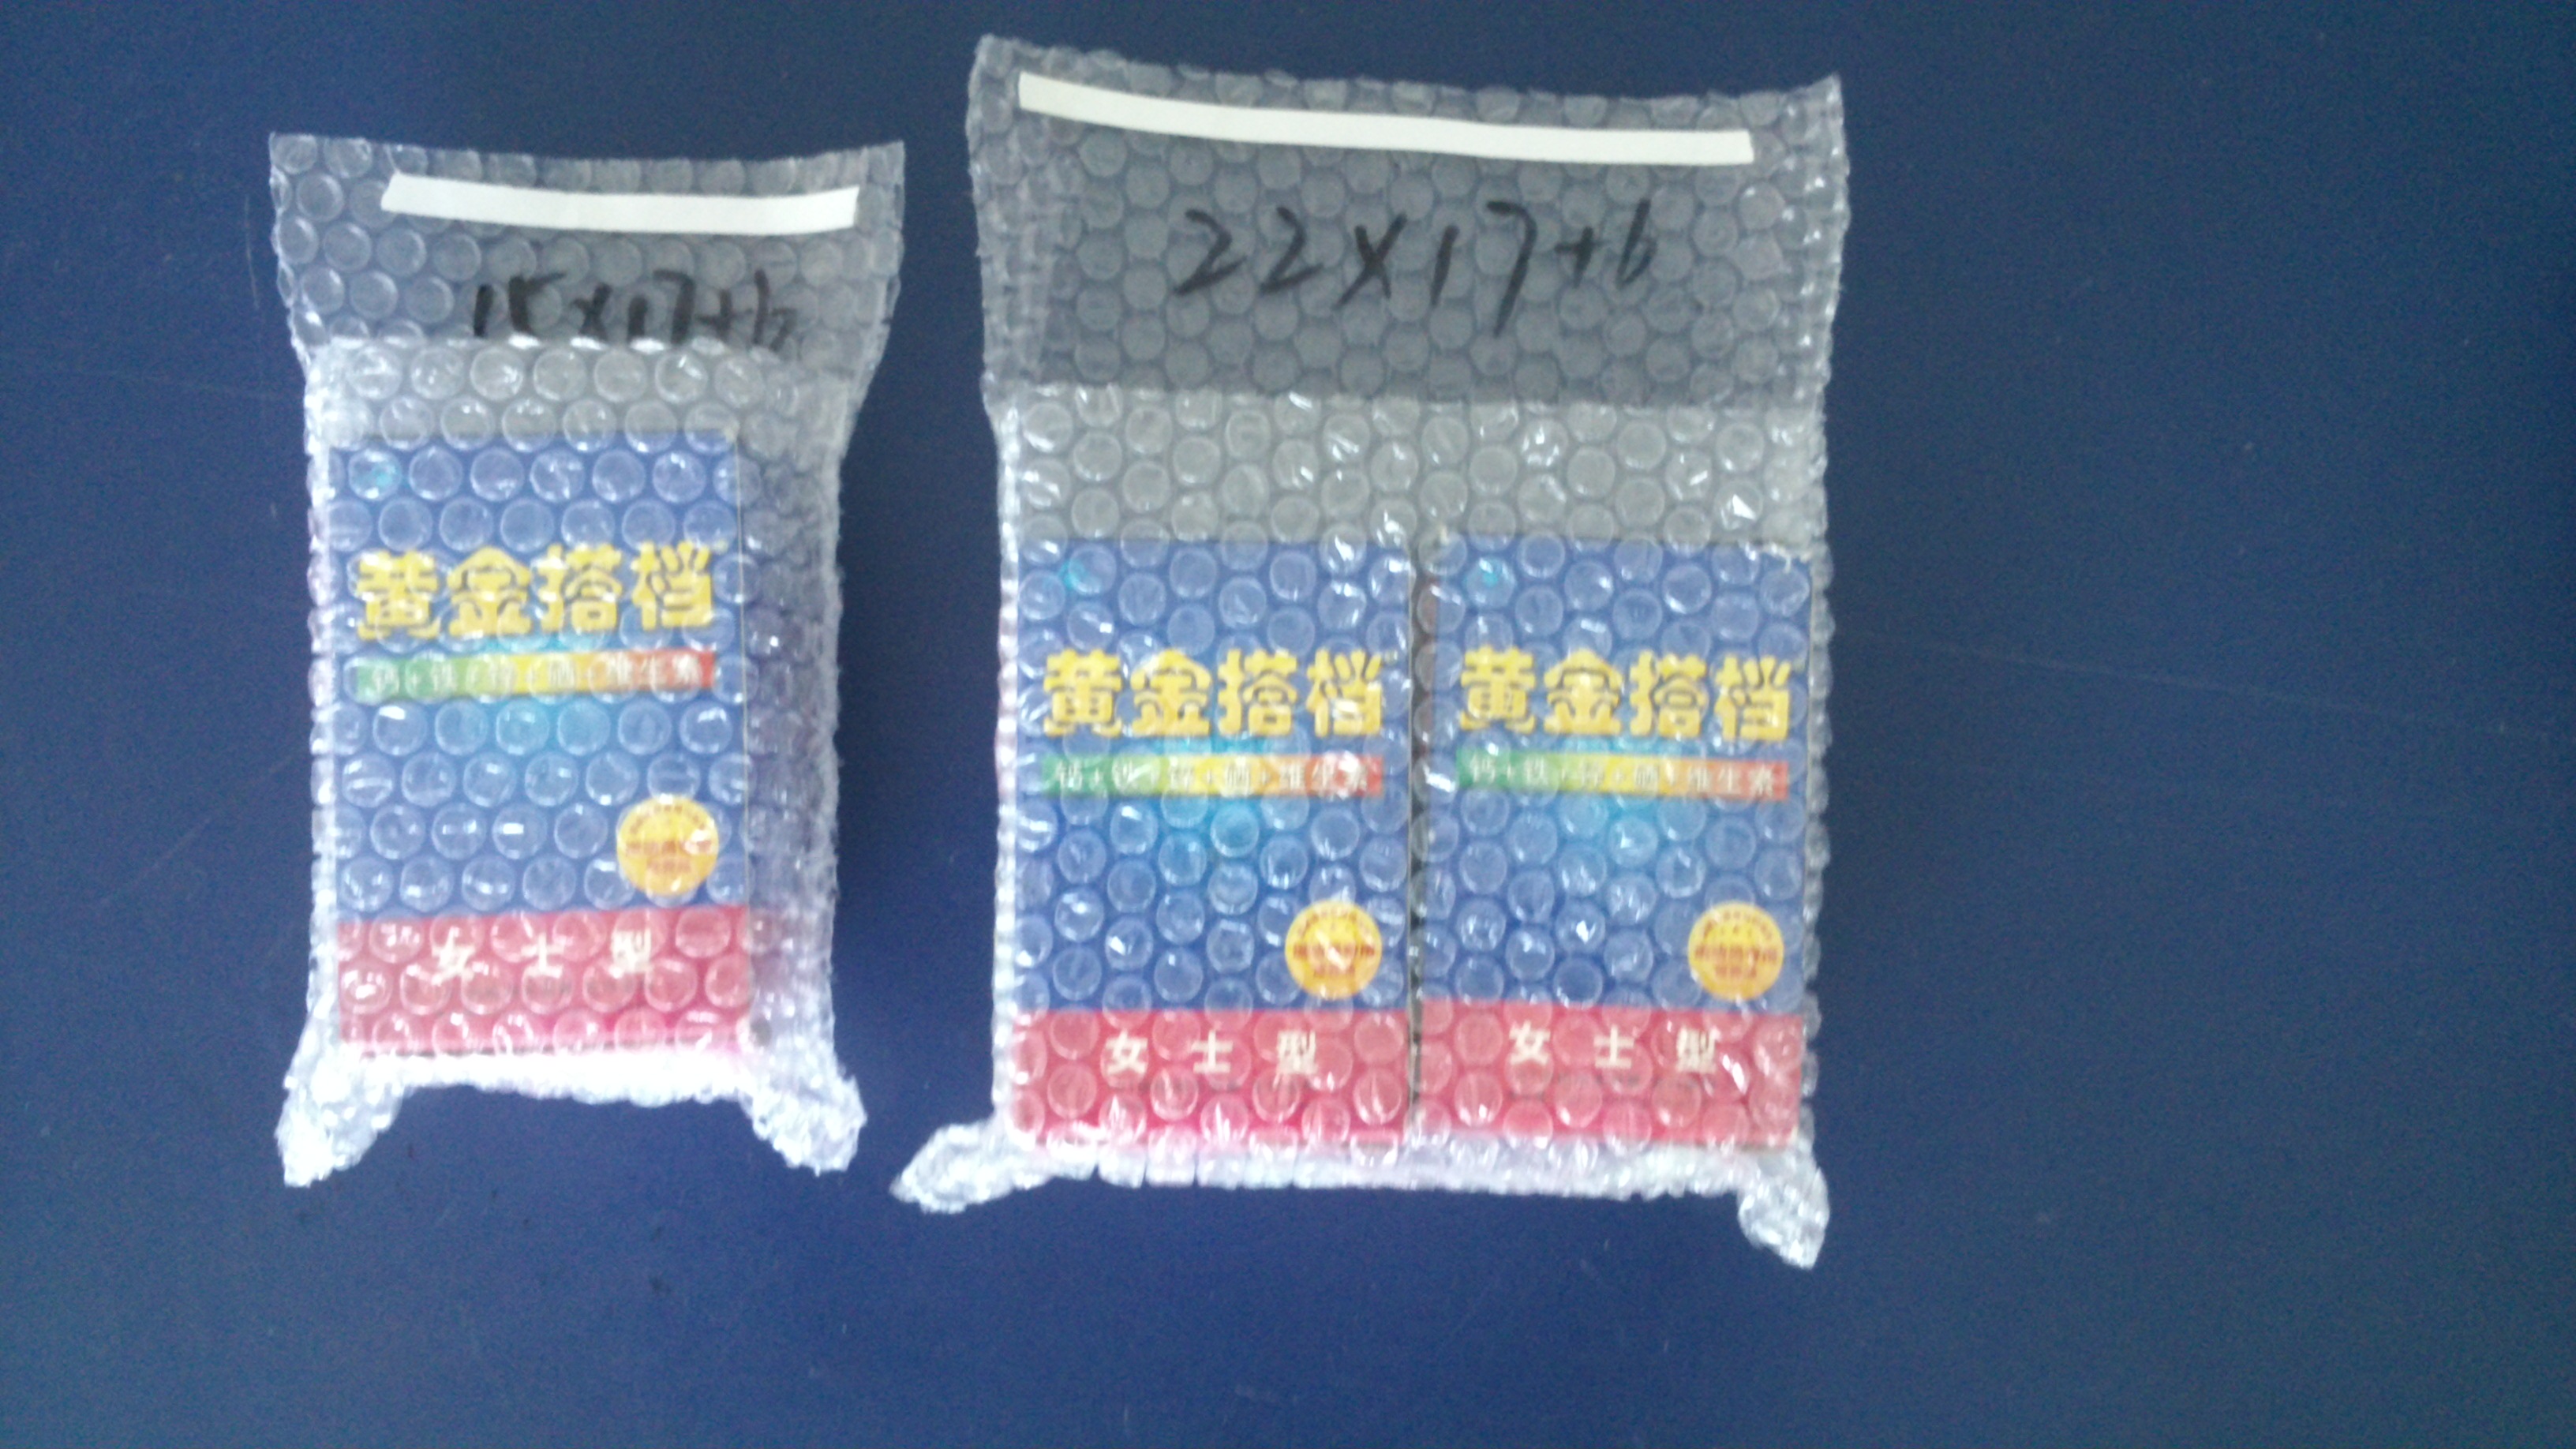 上海气泡袋厂家定制价格——上海传富包装材料——量大从优欢迎来电咨询 厂家专业定做气泡袋